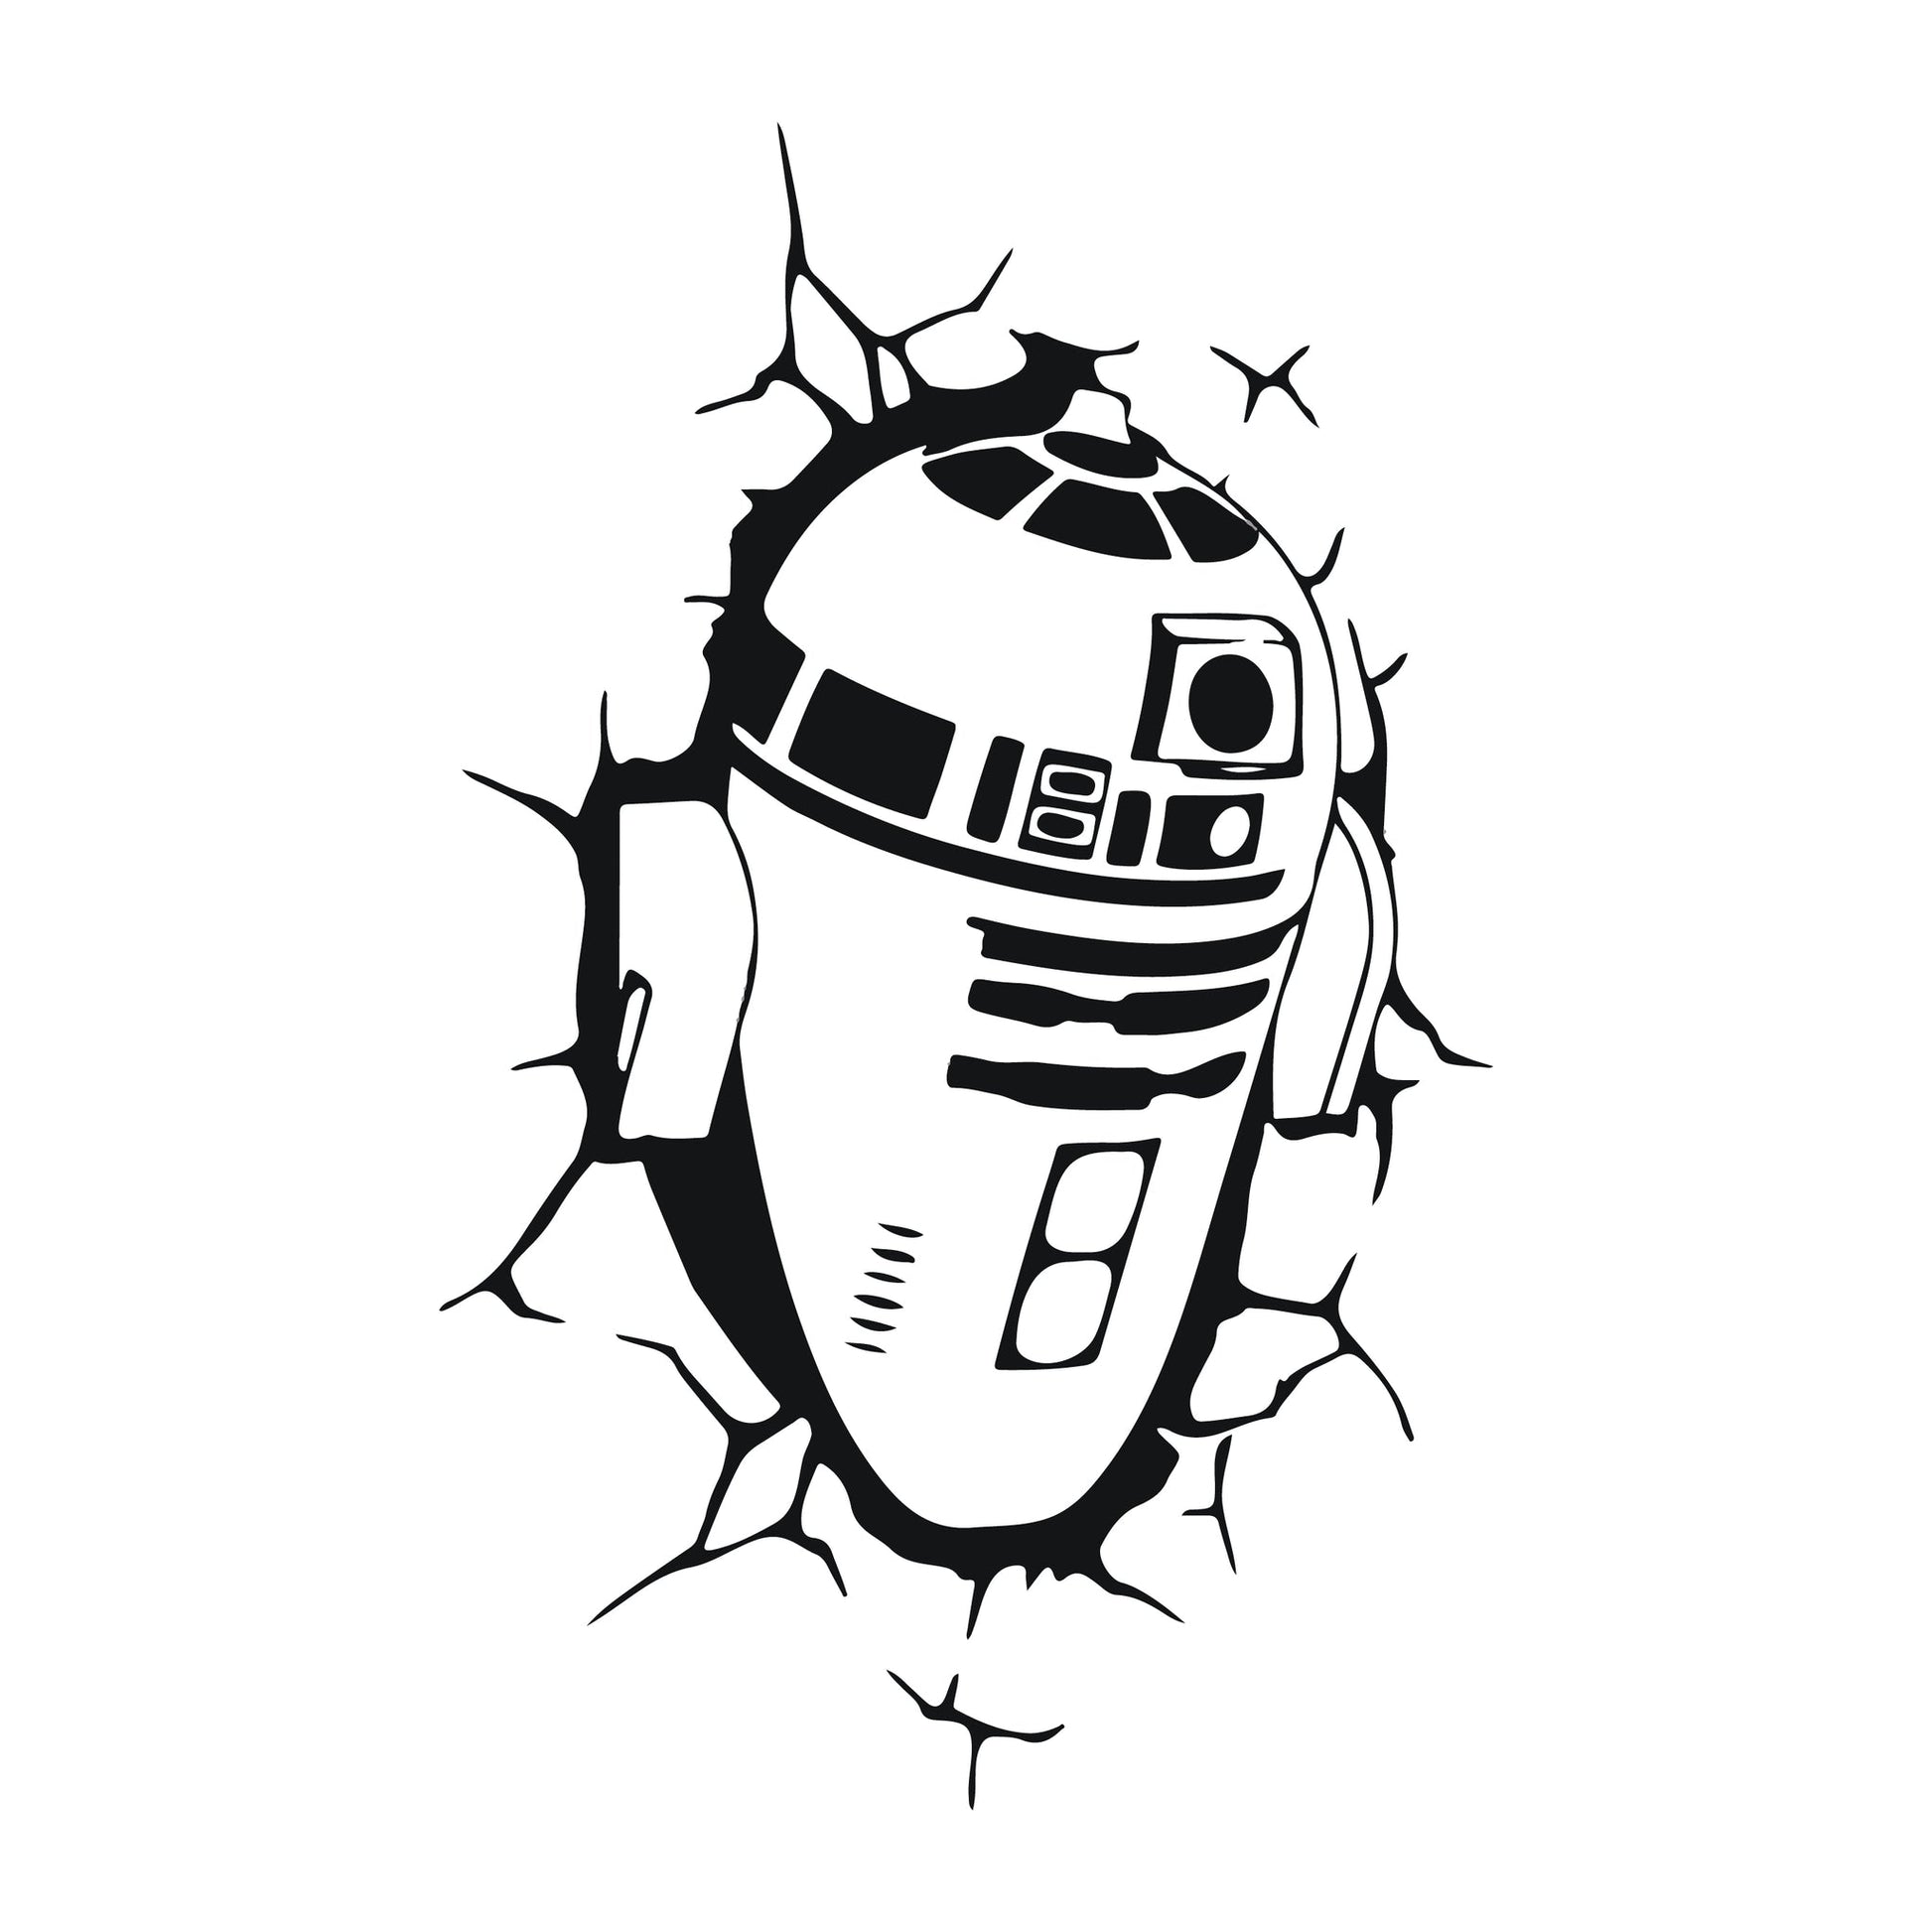 Star Wars R2D2 Wall graphic vinyl Decal Sticker design